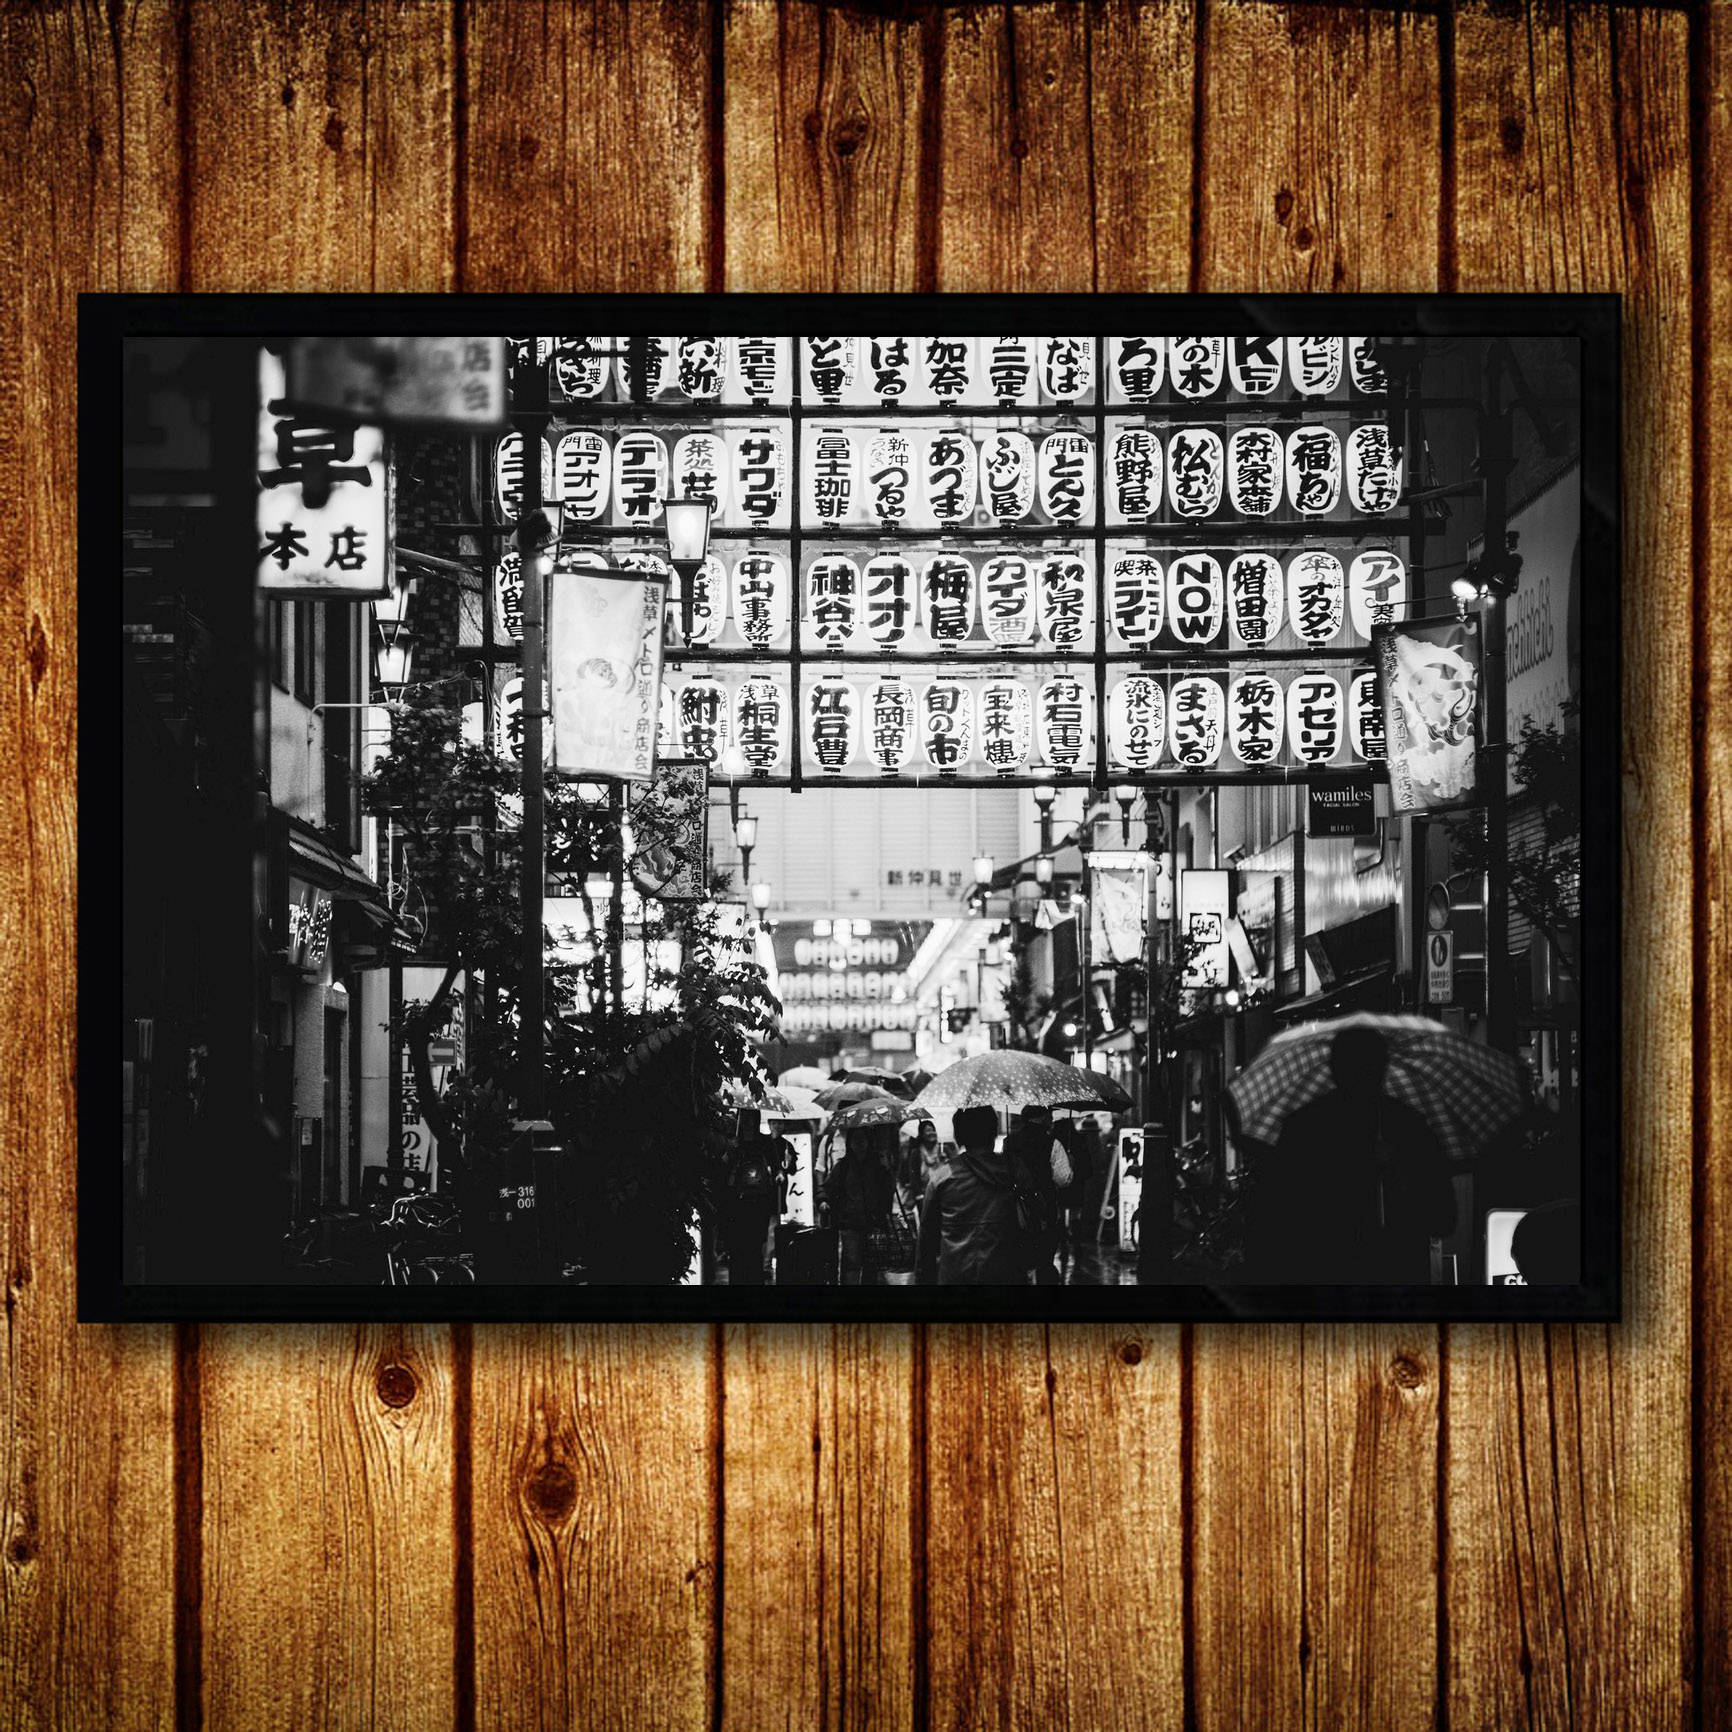 日式复古黑白风景街景装饰画有框画日本餐厅料理店寿司店壁挂墙画